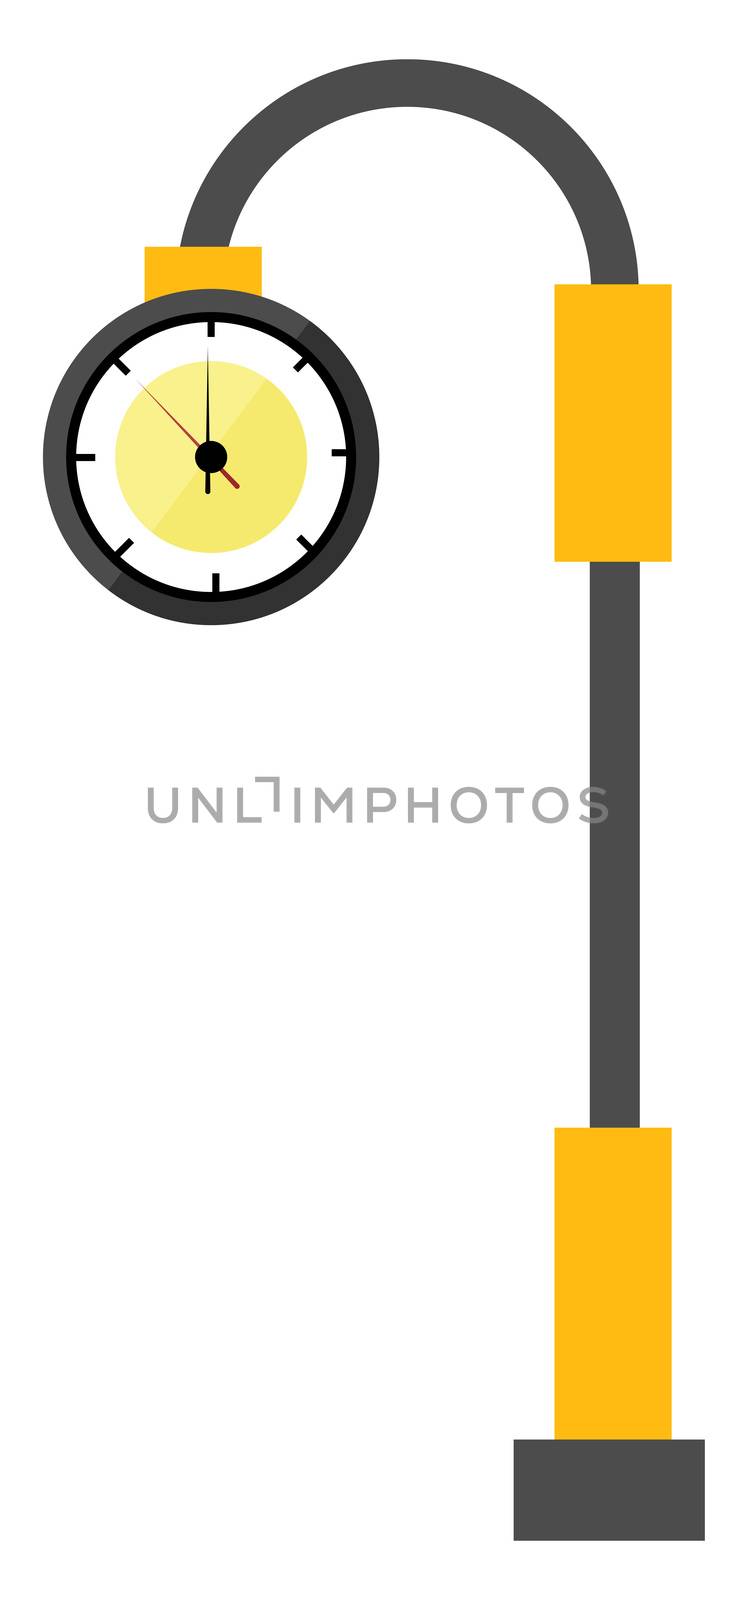 Street clock, illustration, vector on white background by Morphart